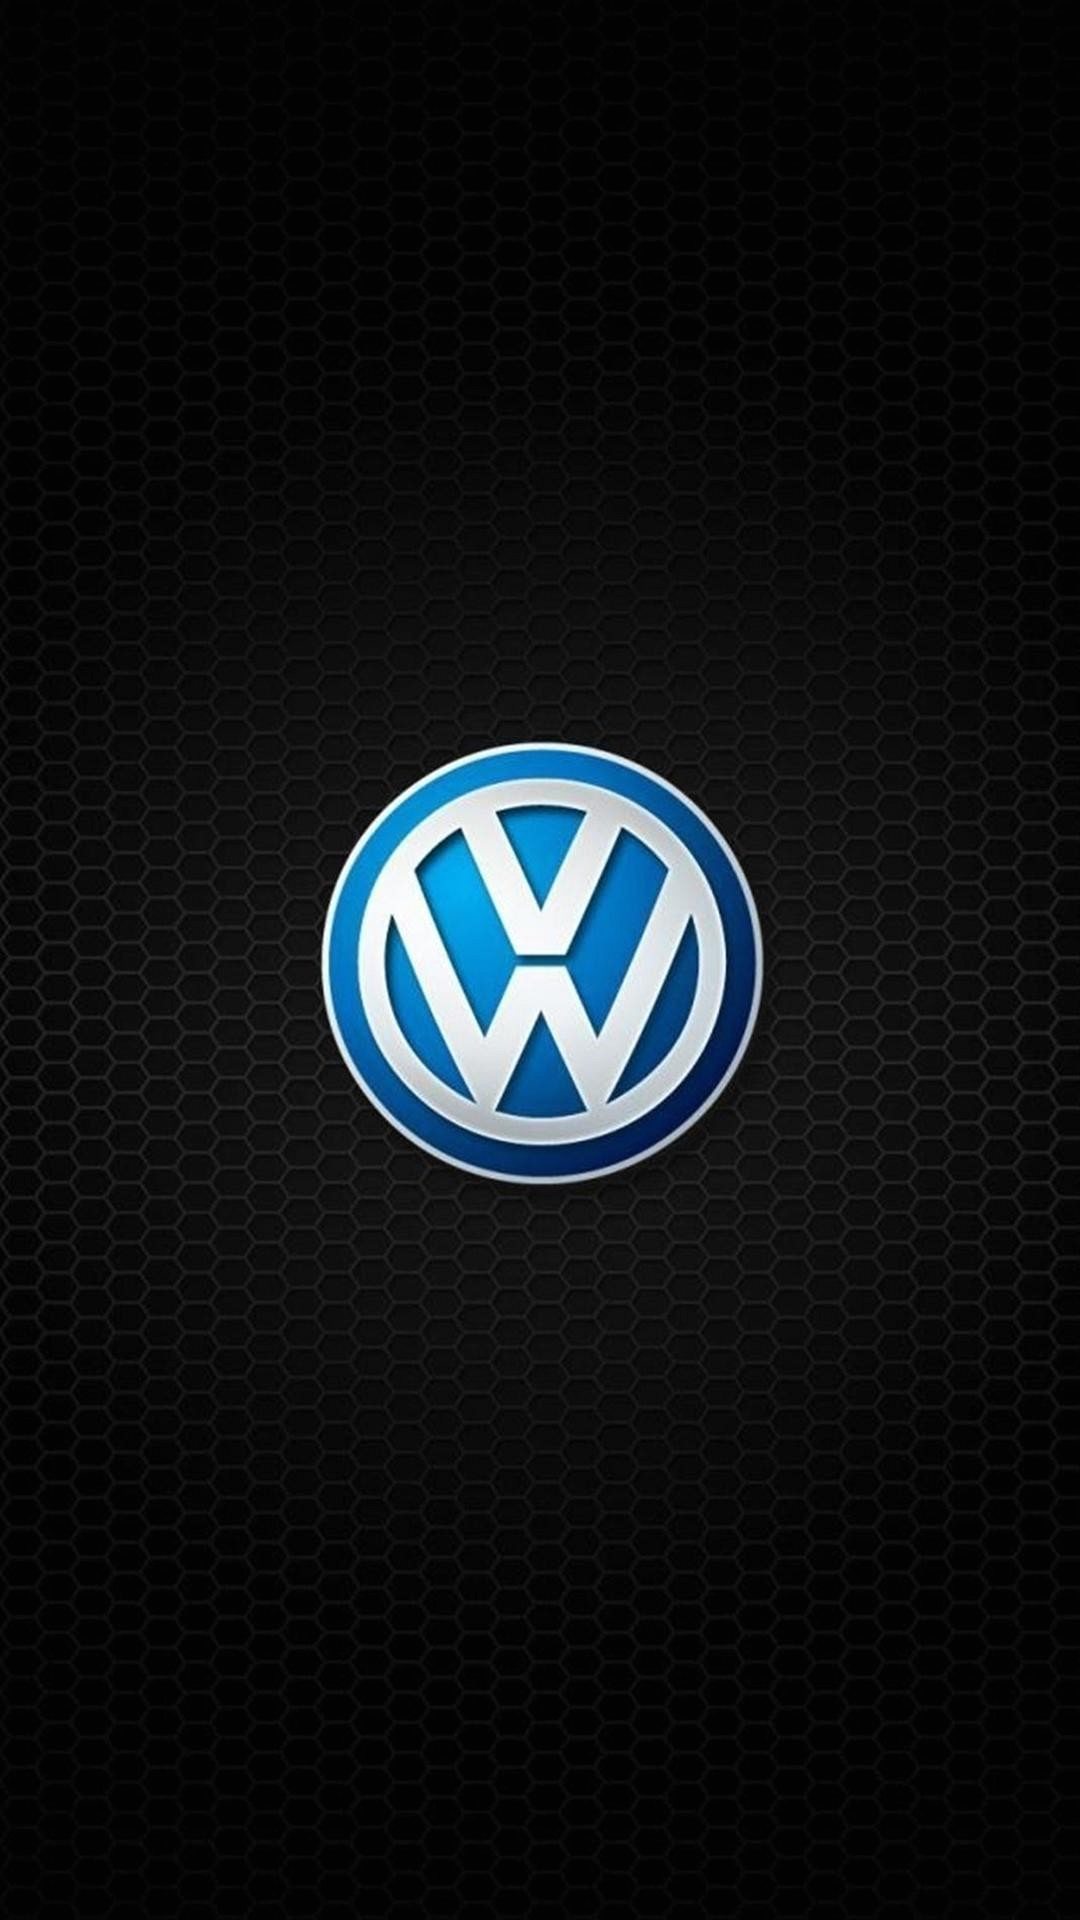 Fine HDQ Volkswagen Images | Nice Full HD Wallpapers